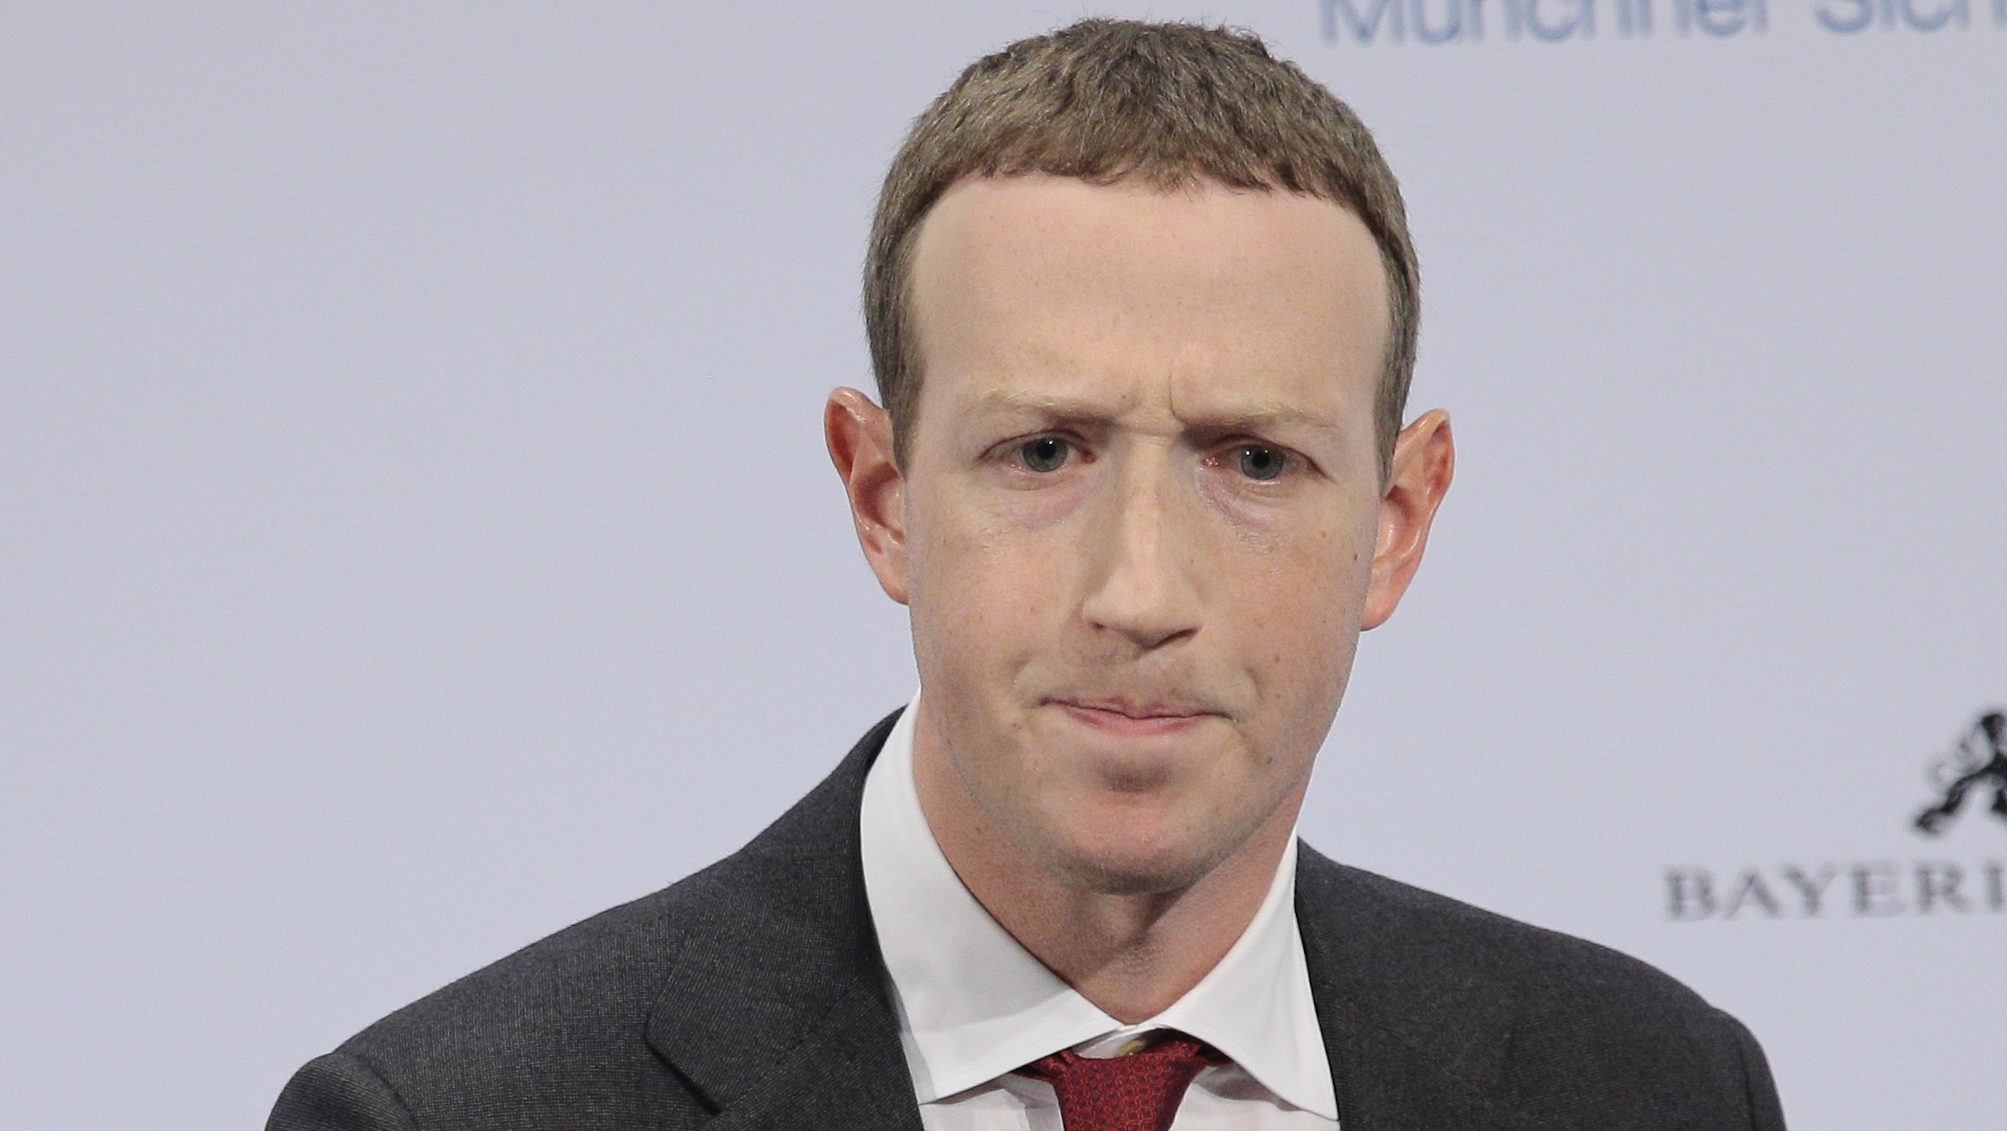 Még Zuckerberg facebookos adatai is kiszivárogtak